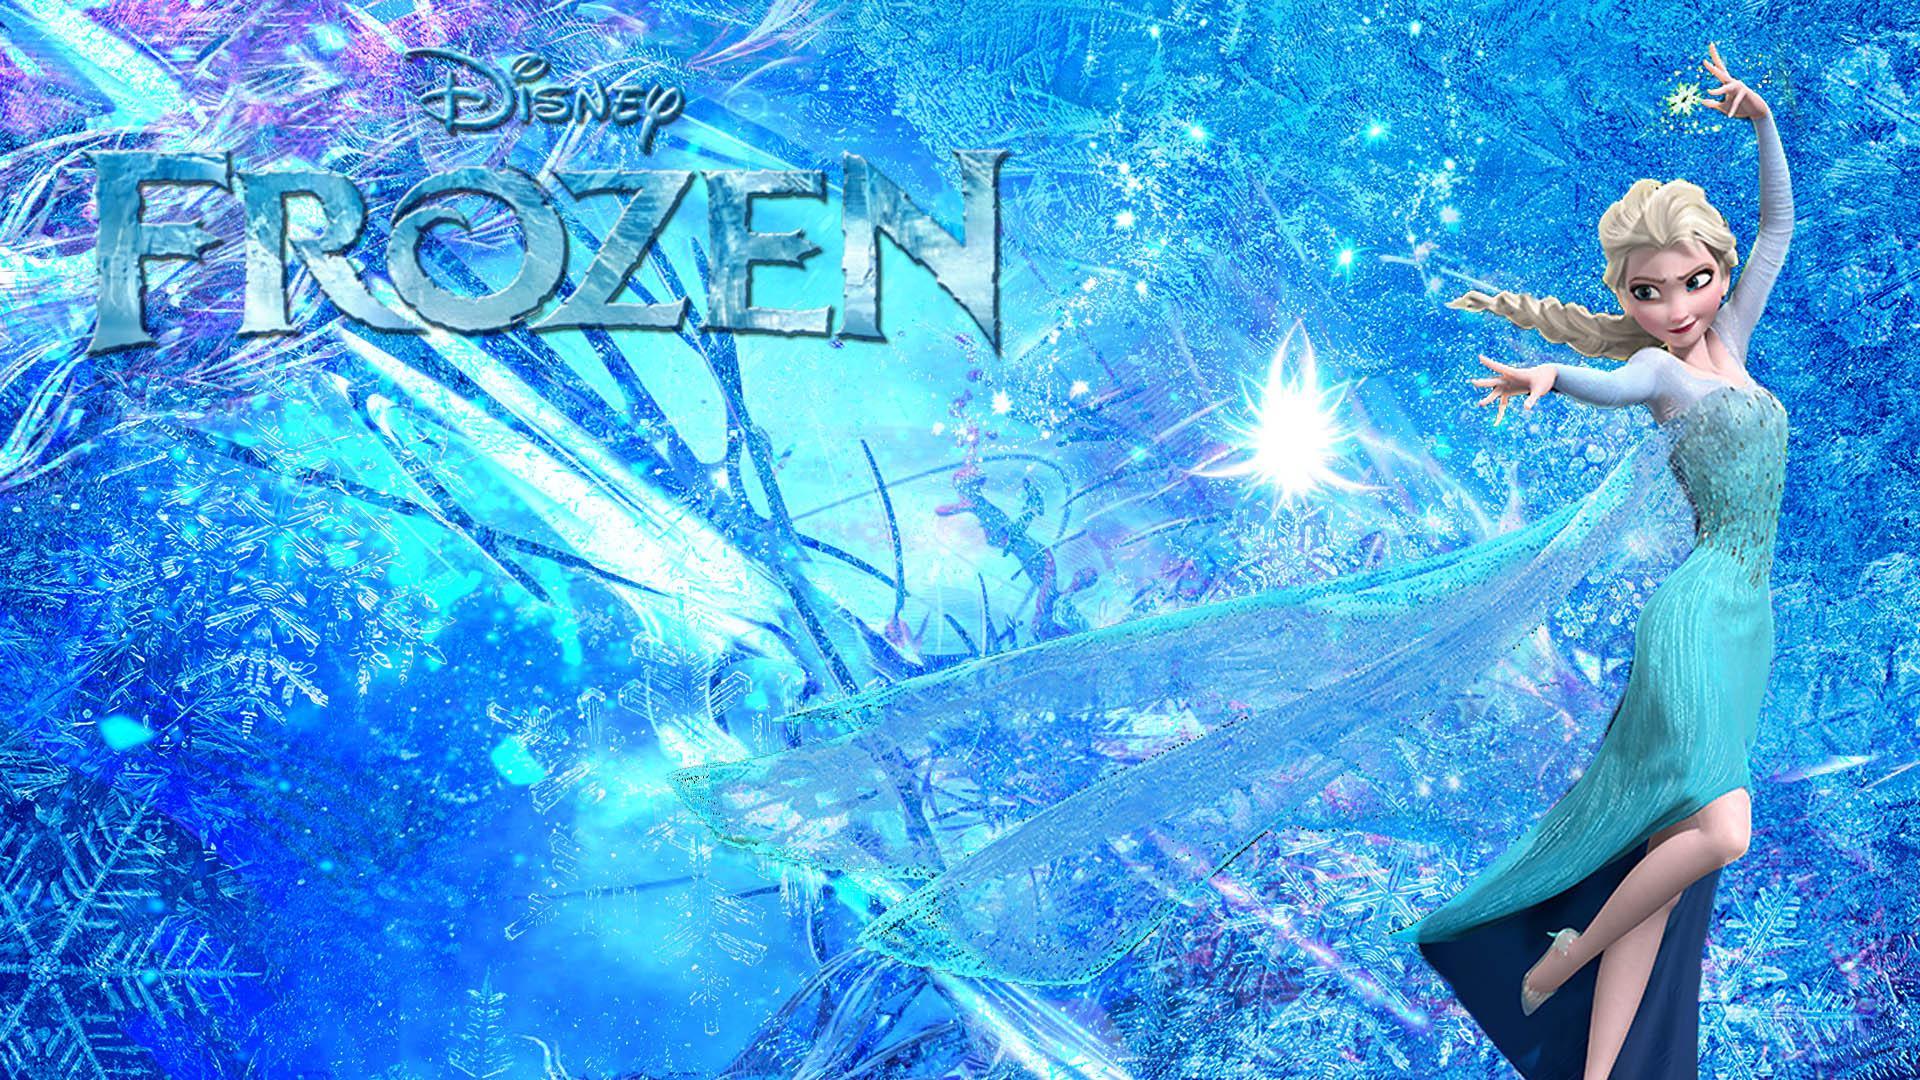 Frozen Background HD. Disney Frozen Wallpaper, Frozen Wallpaper and Frozen Fruit Wallpaper